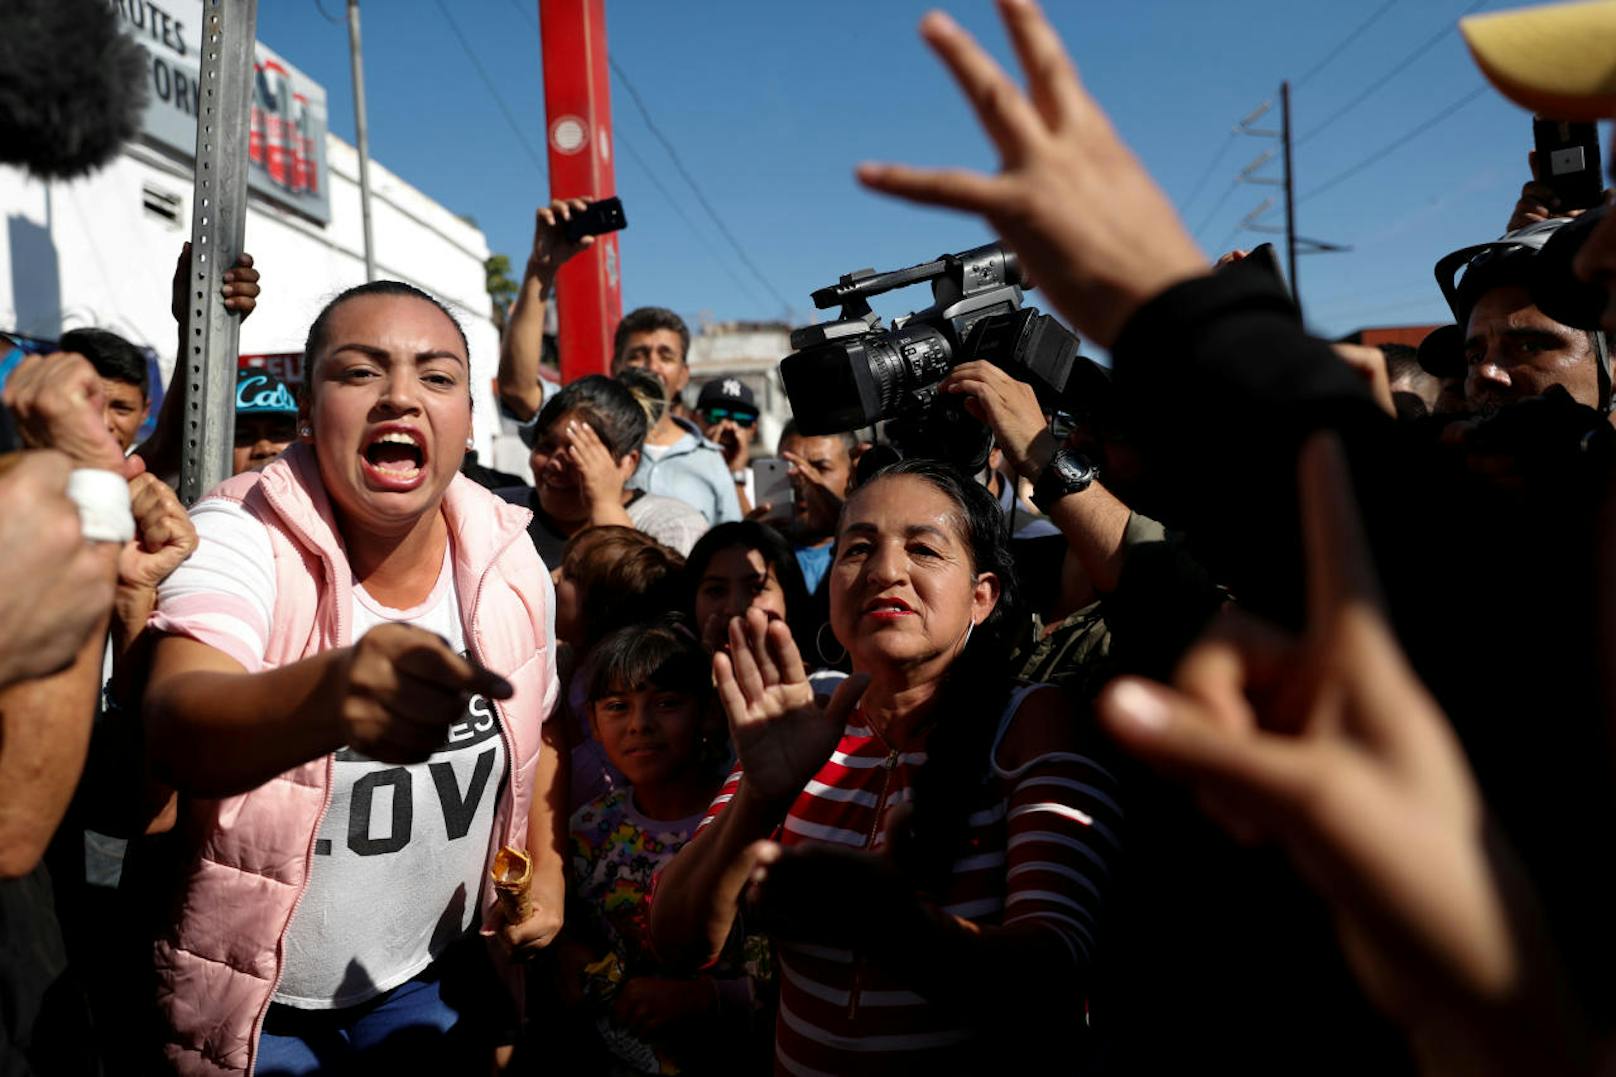 Bei den Protesten gegen Migranten aus Mittelamerika wurde es laut und zum Teil gewalttätig.